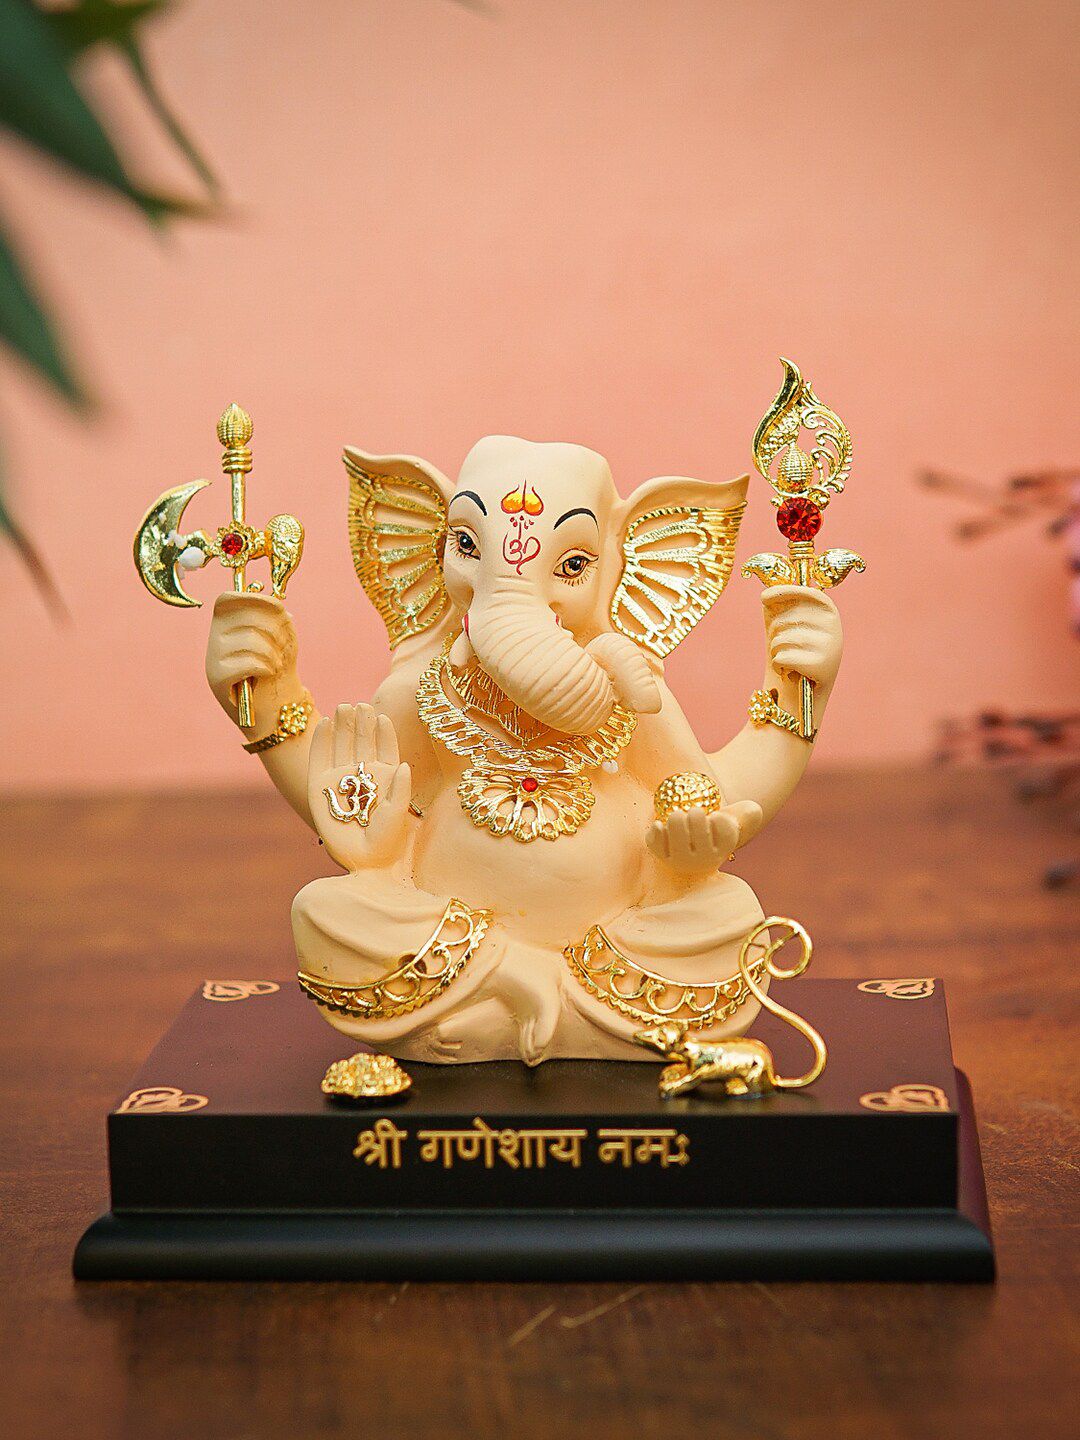 StatueStudio Gold-Toned & Peach-Colored Textured Ganpati Statue On Base Showpiece Price in India